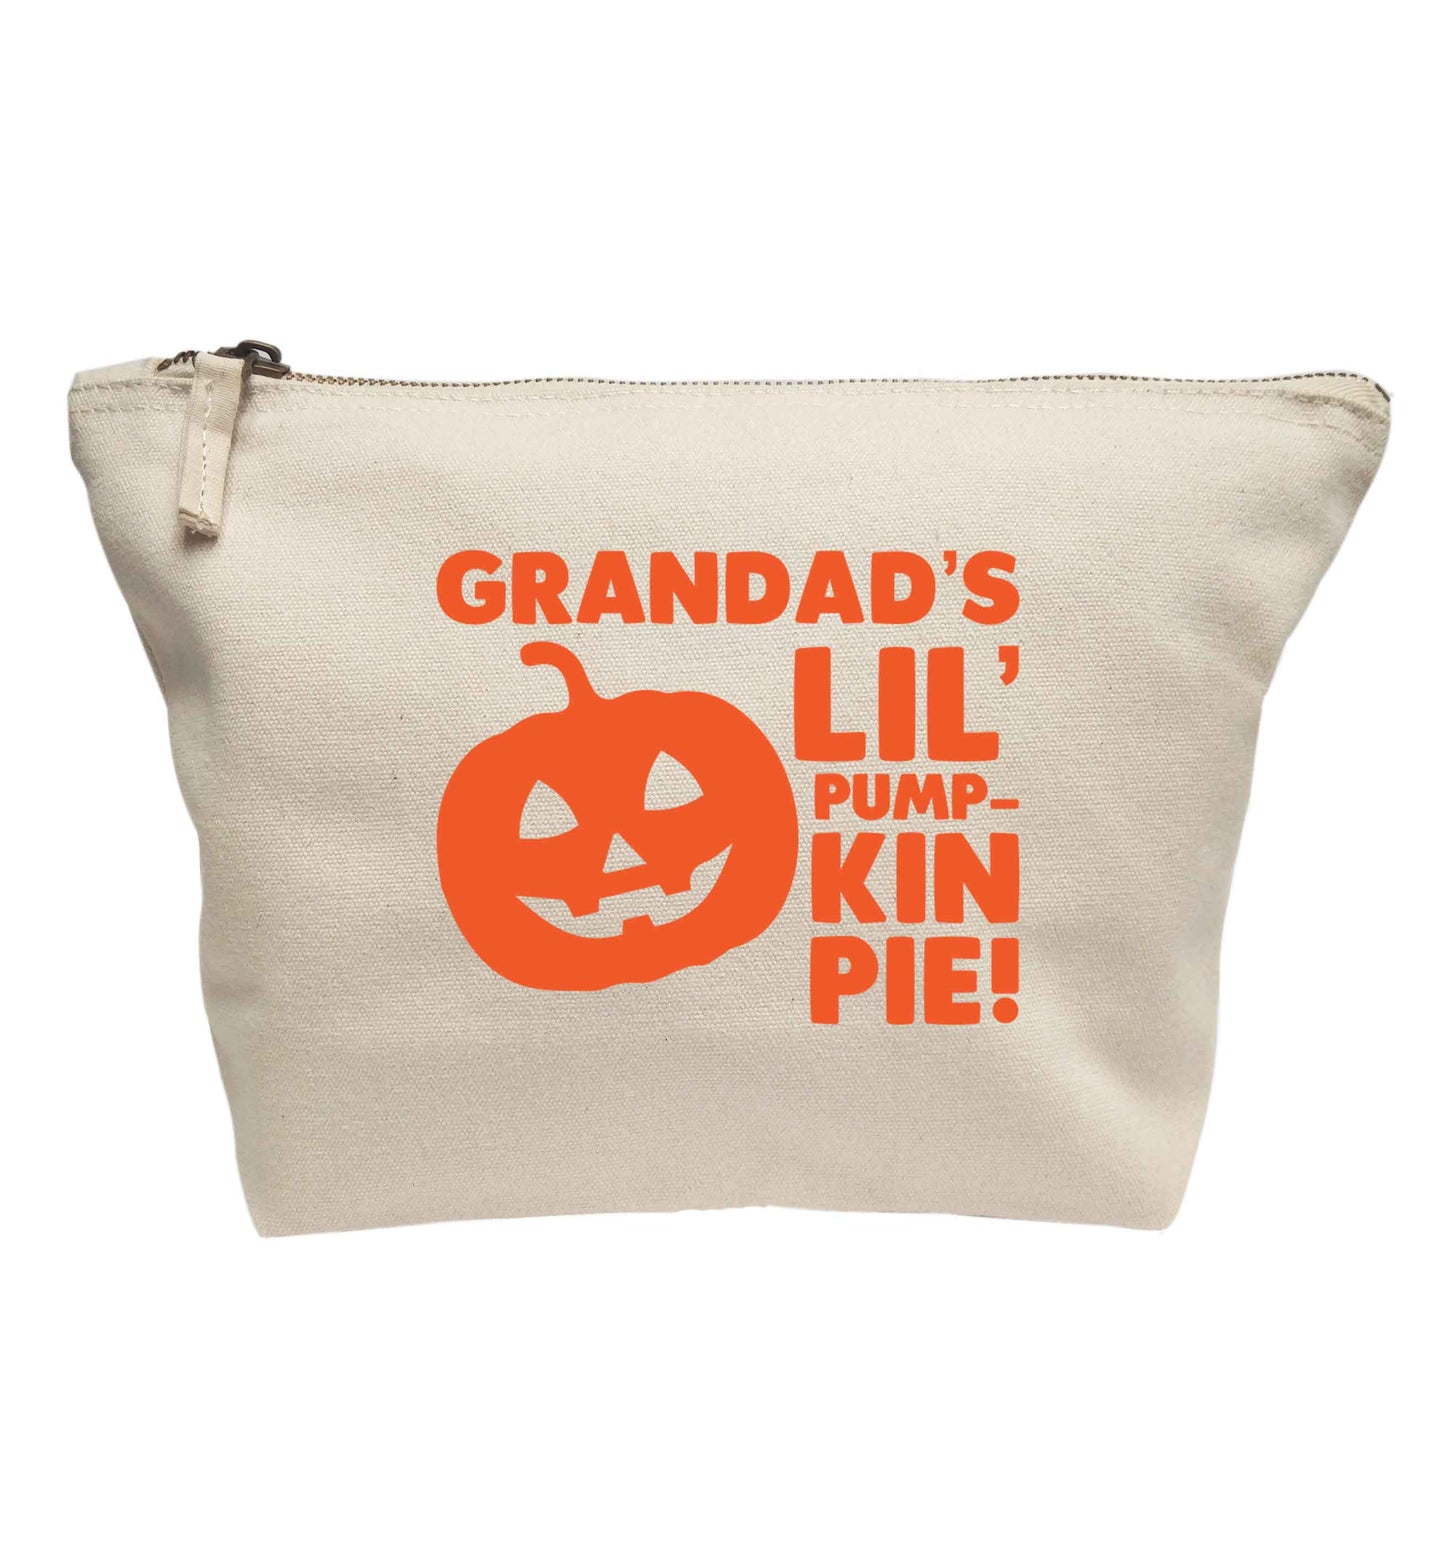 Daddy's lil' pumpkin pie | Makeup / wash bag